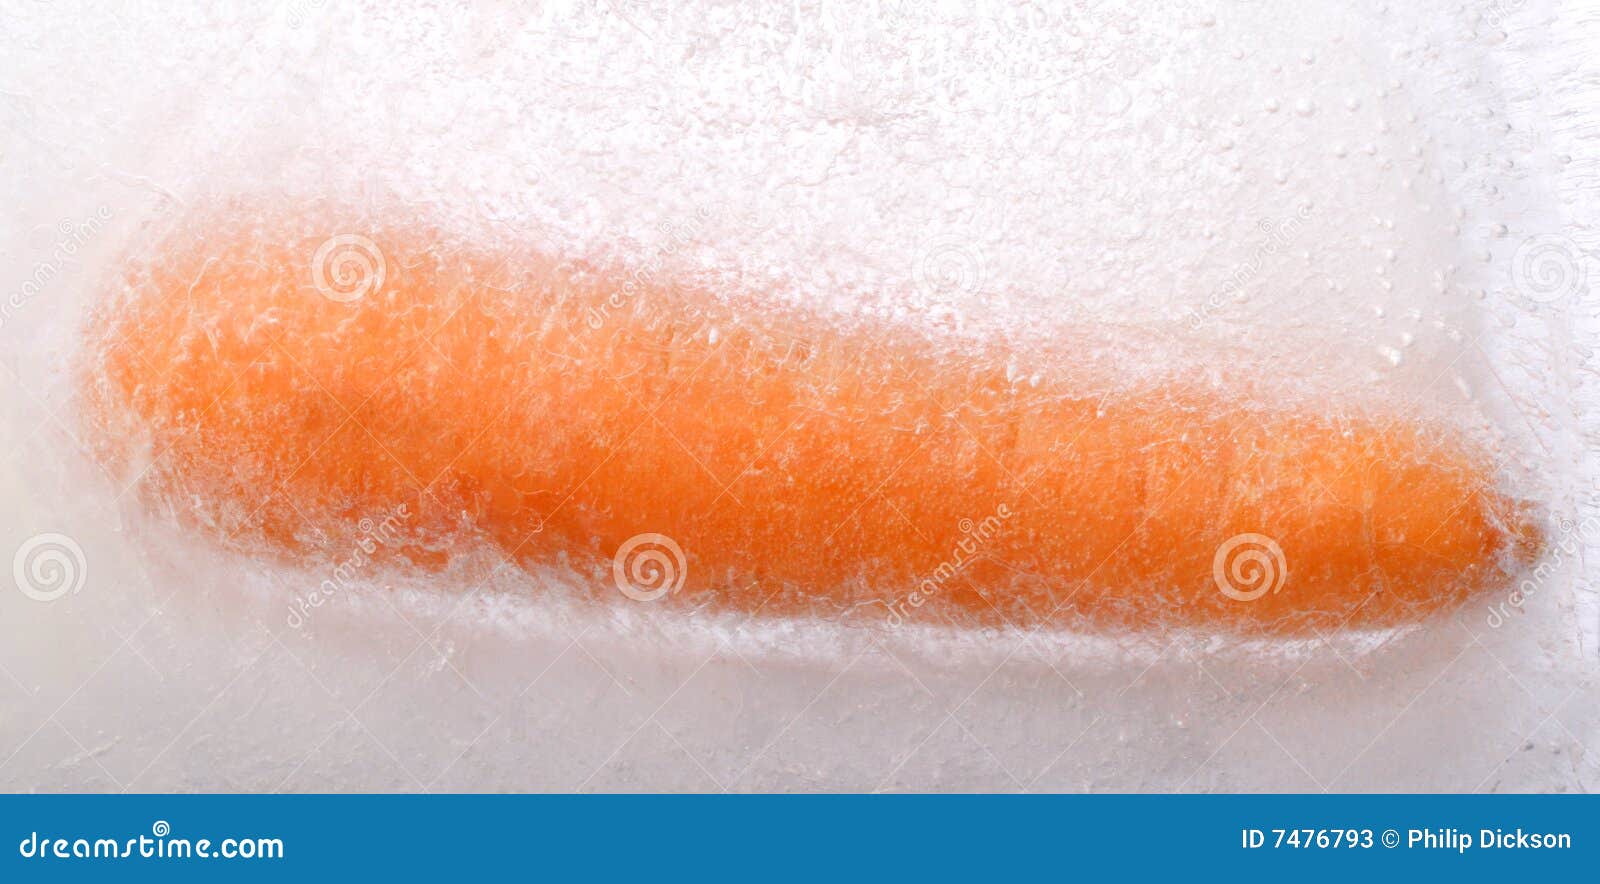 Zanahoria congelada imagen de archivo. Imagen de estructura - 7476793